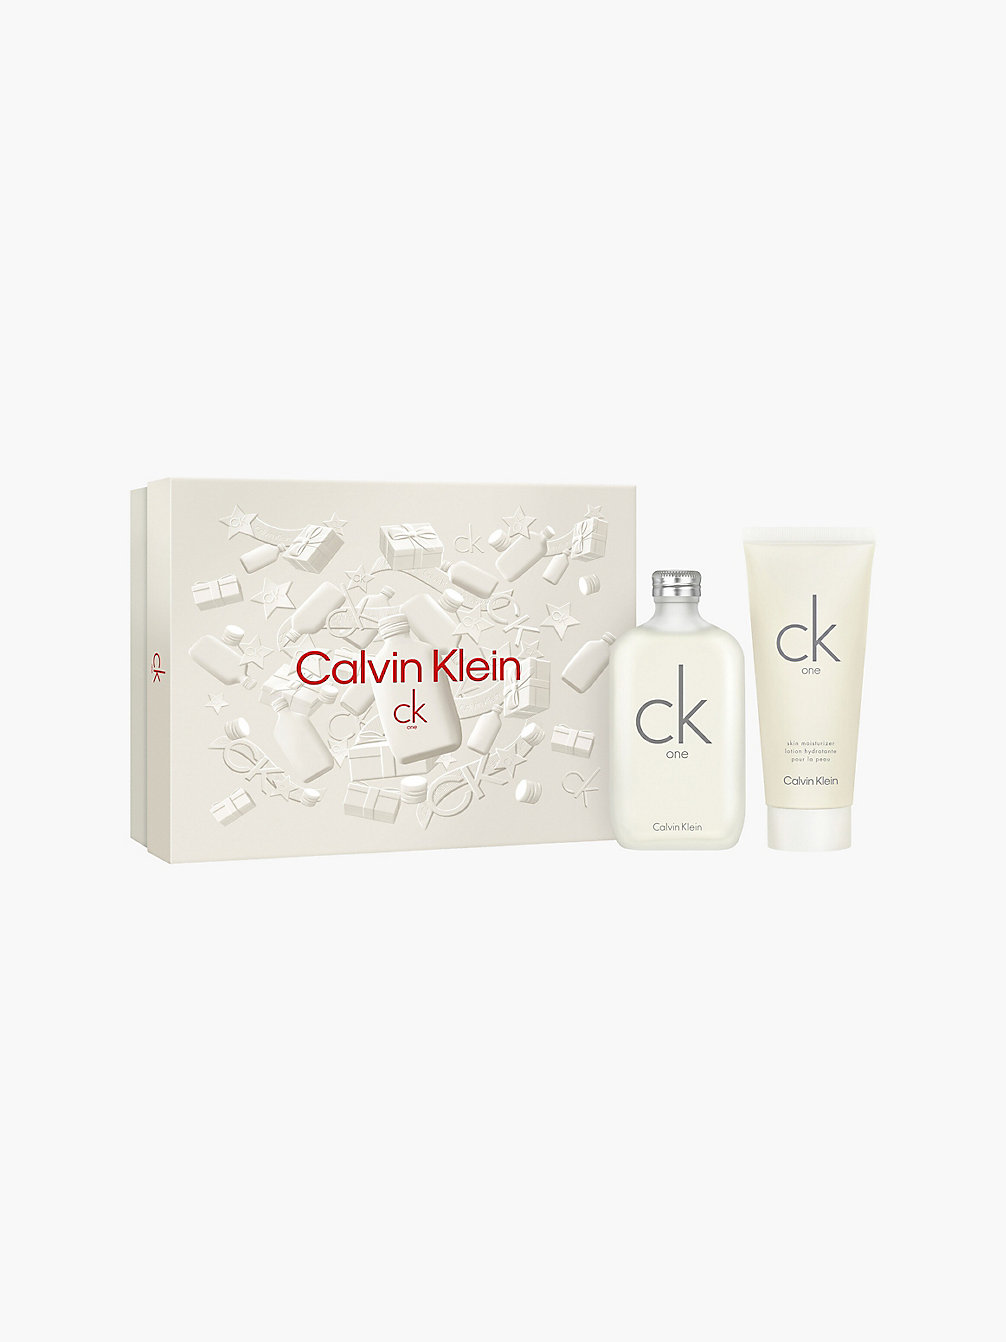 CK One - Coffret Cadeau Eau De Toilette > MULTI > undefined unisex > Calvin Klein